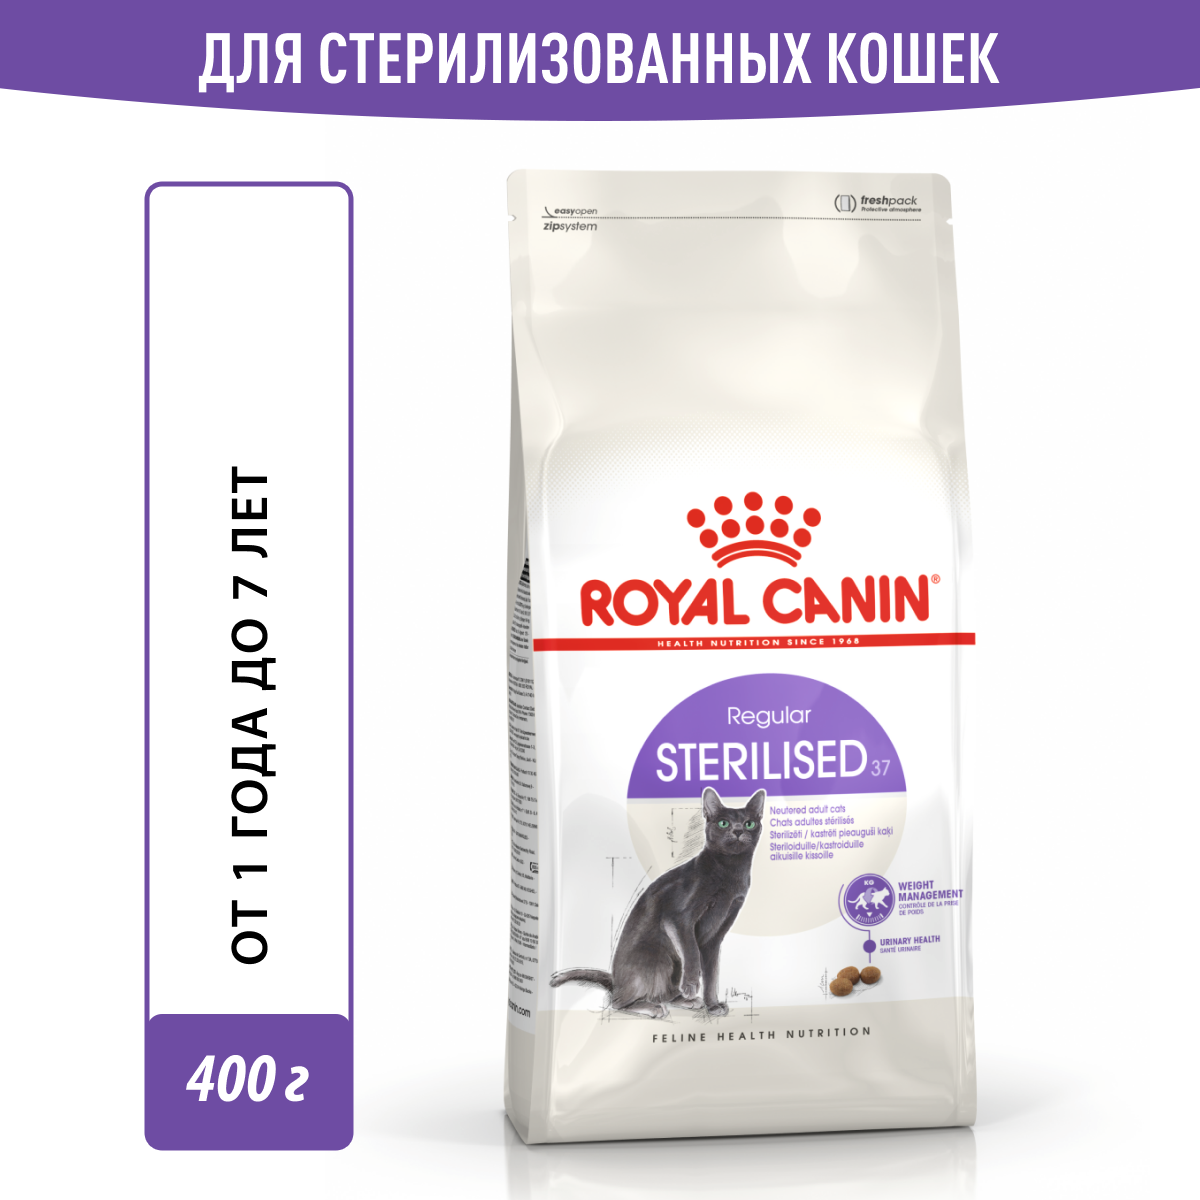 Сухой корм Royal Canin Sterilised 37 для стерилизованных кошек от 1 года до 7 лет, 0.4 кг